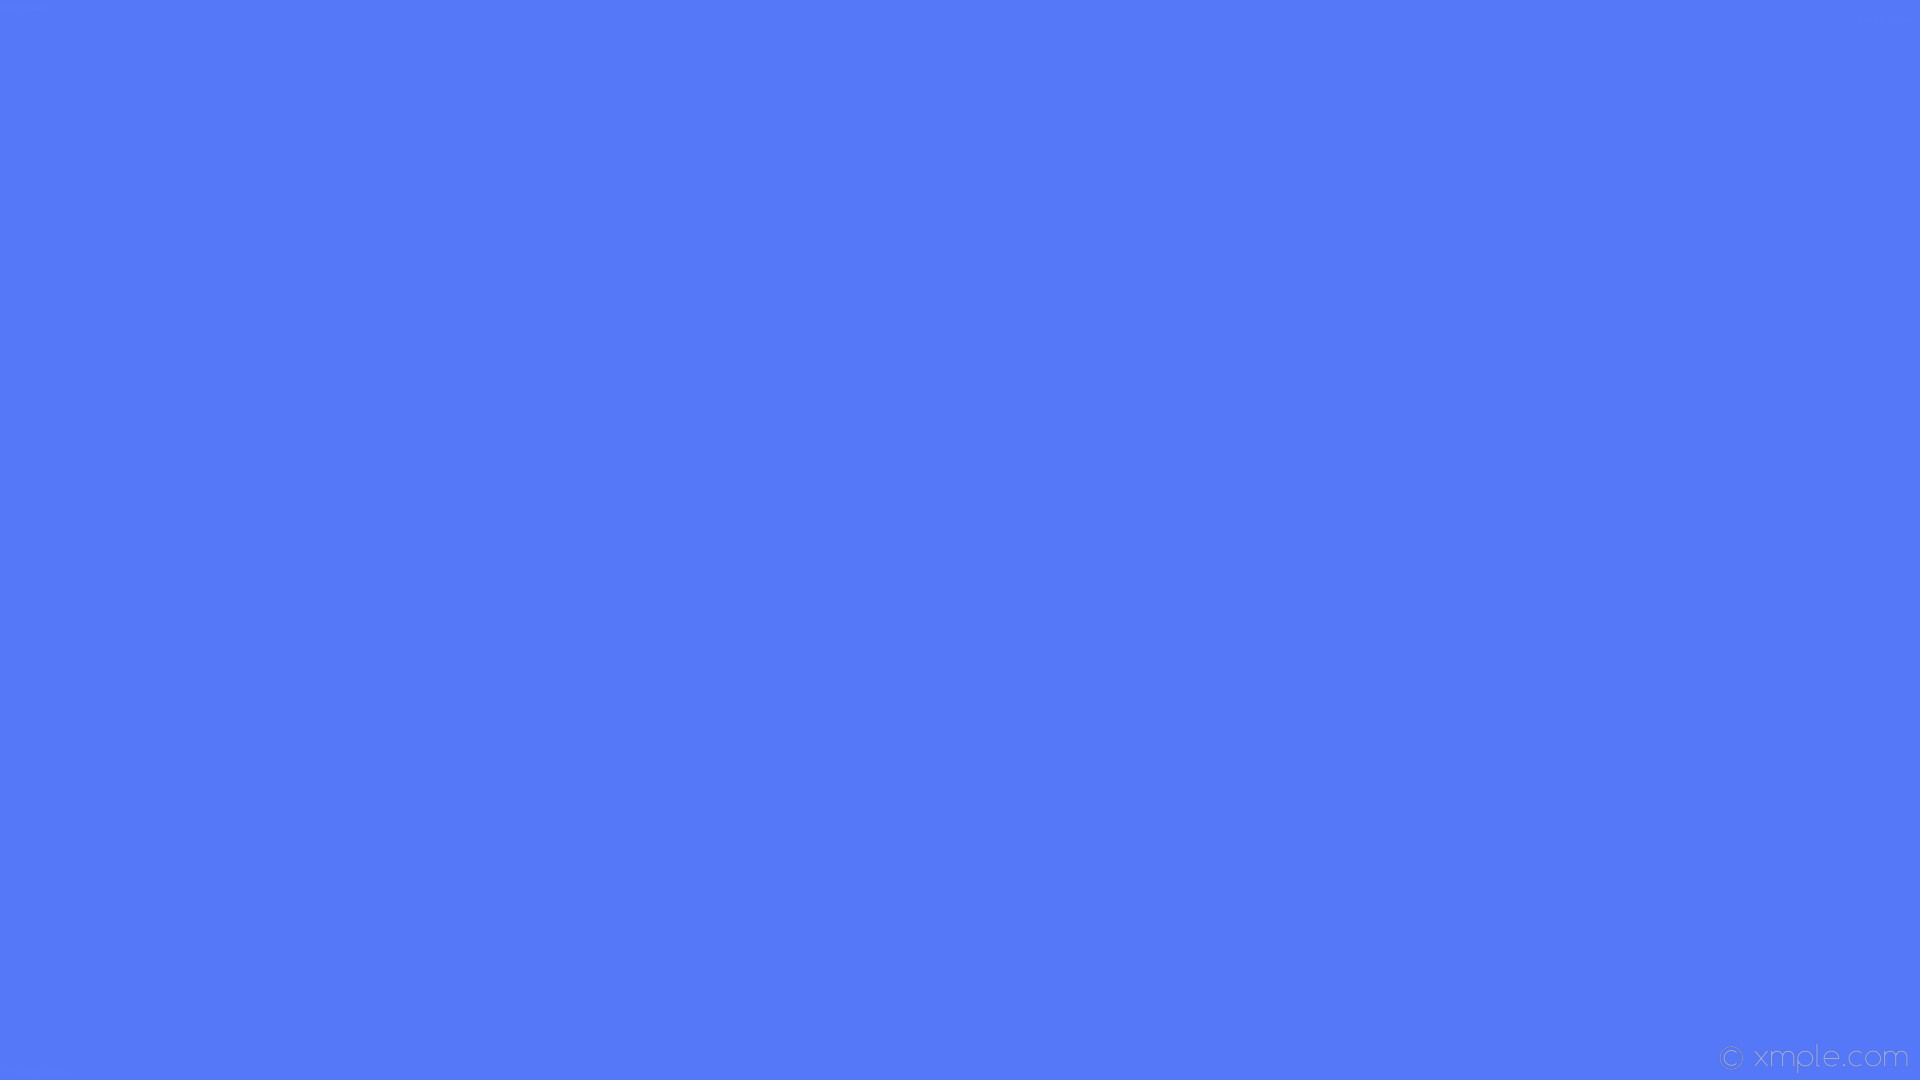 1920x1080 wallpaper one colour plain blue single solid color #5478f8